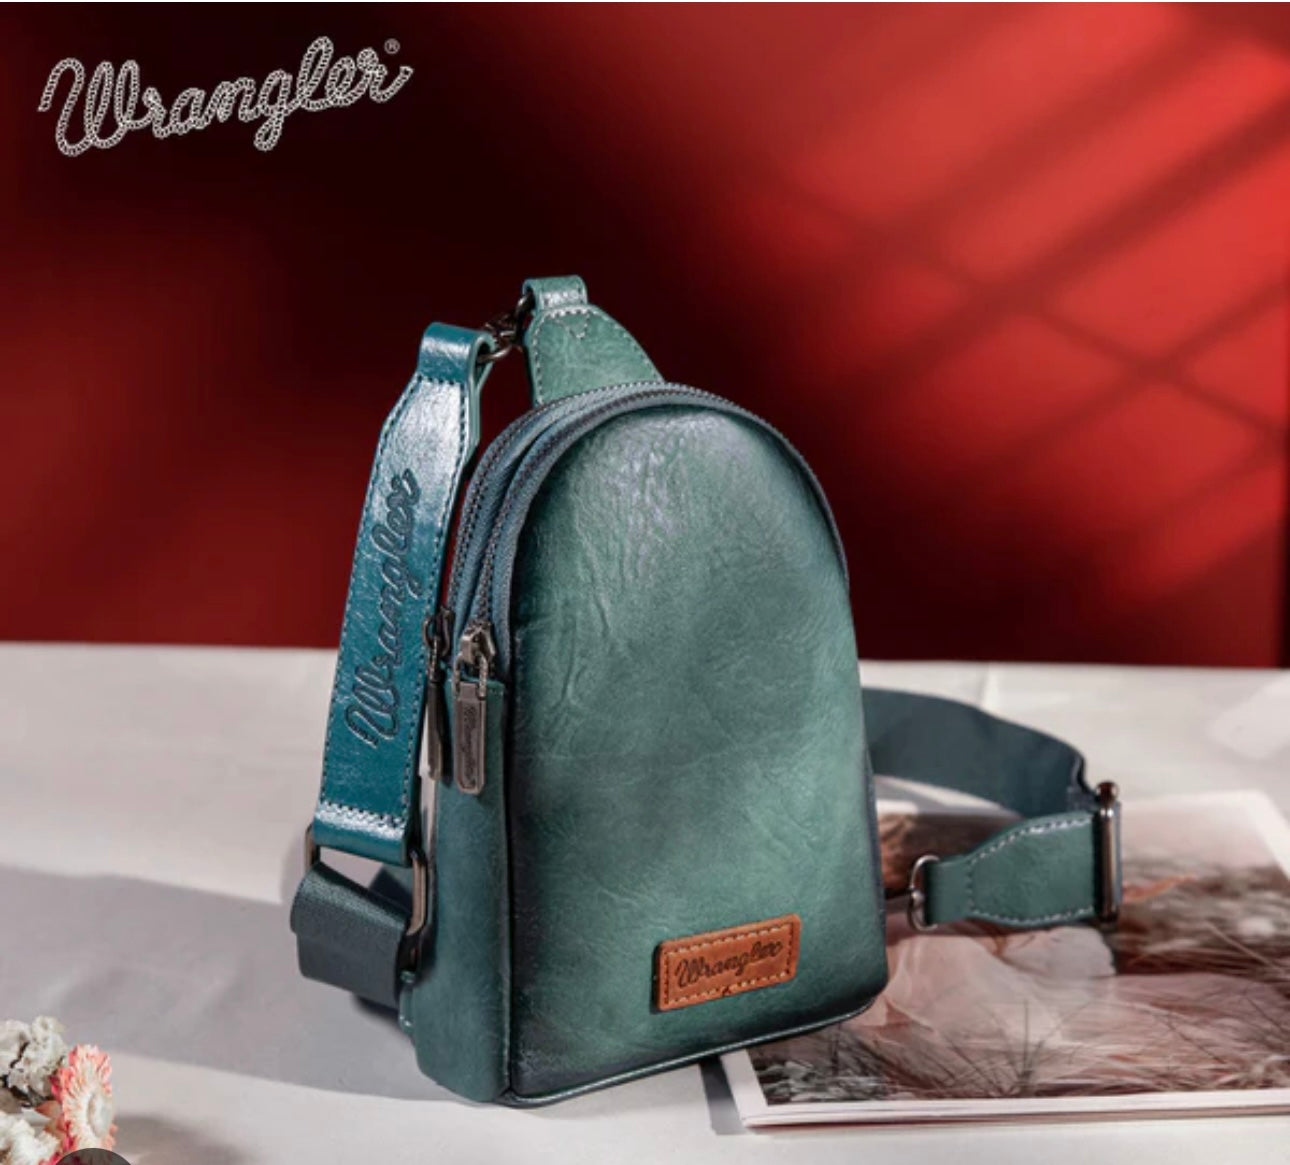 Wrangler Leather Sling Bag / Cross Body Purse